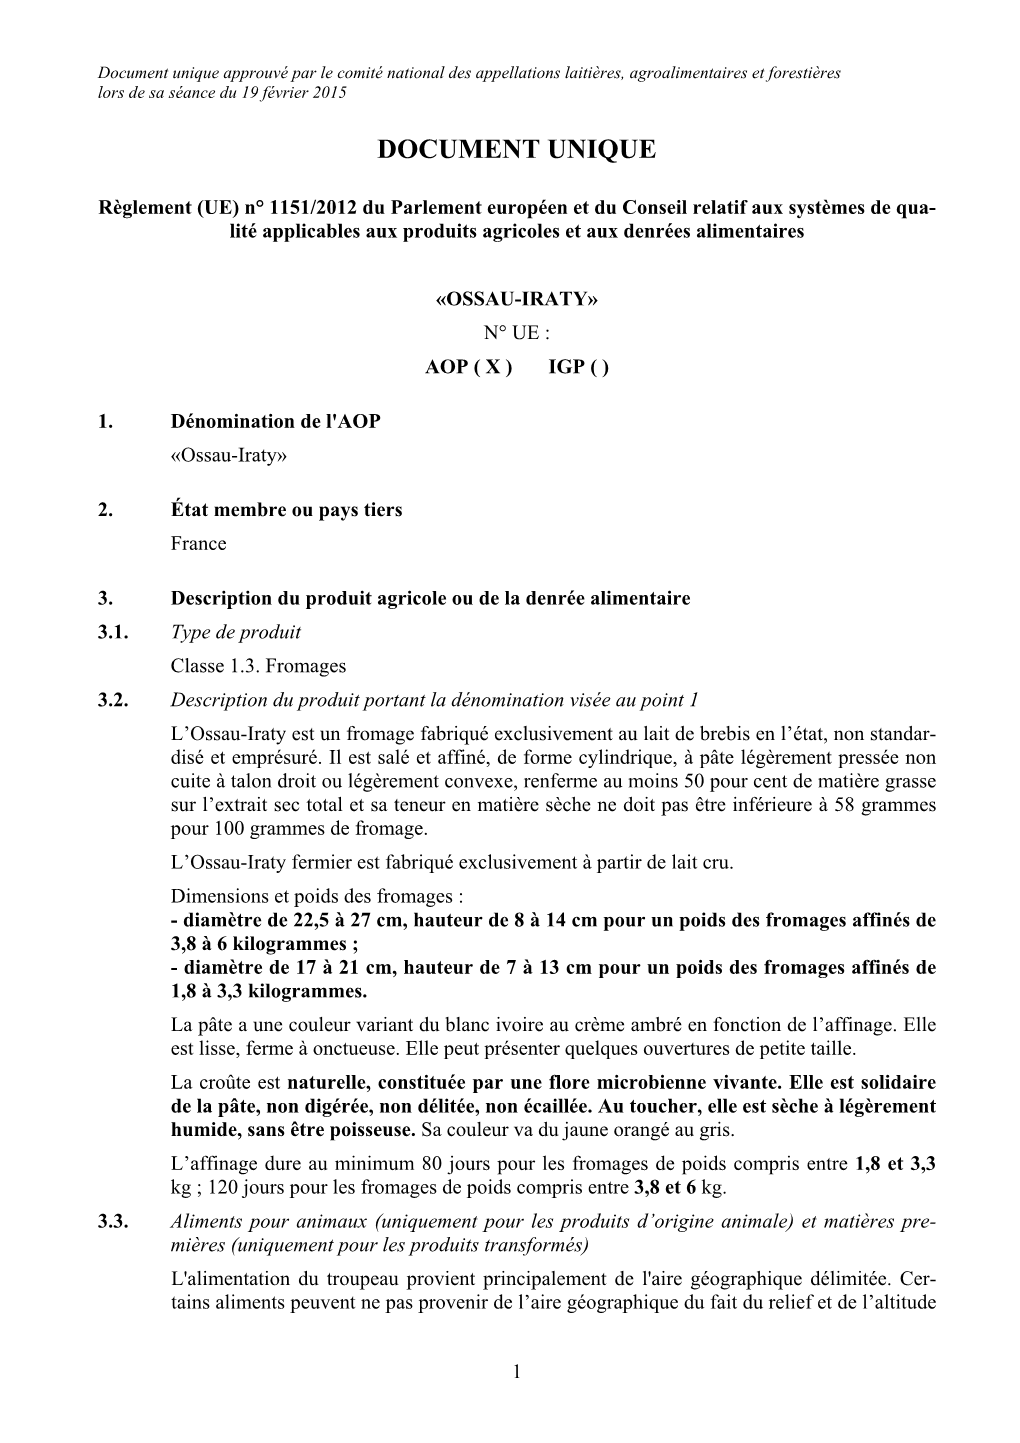 Document Unique Approuvé Par Le Comité National Des Appellations Laitières, Agroalimentaires Et Forestières Lors De Sa Séance Du 19 Février 2015